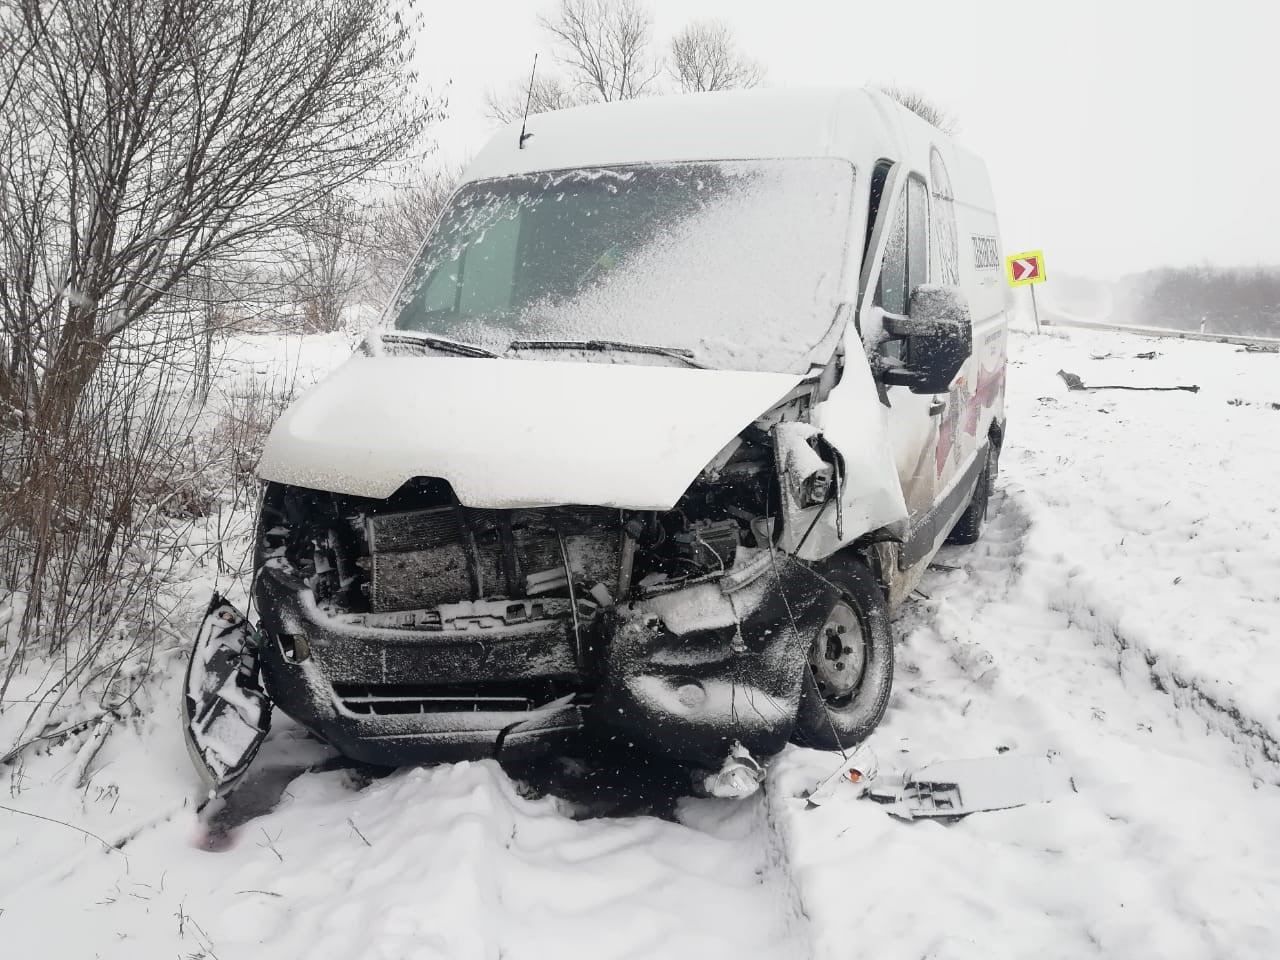 Нашли друг друга: на зимней трассе лоб в лоб столкнулись 2 Renault - фото автотрощи